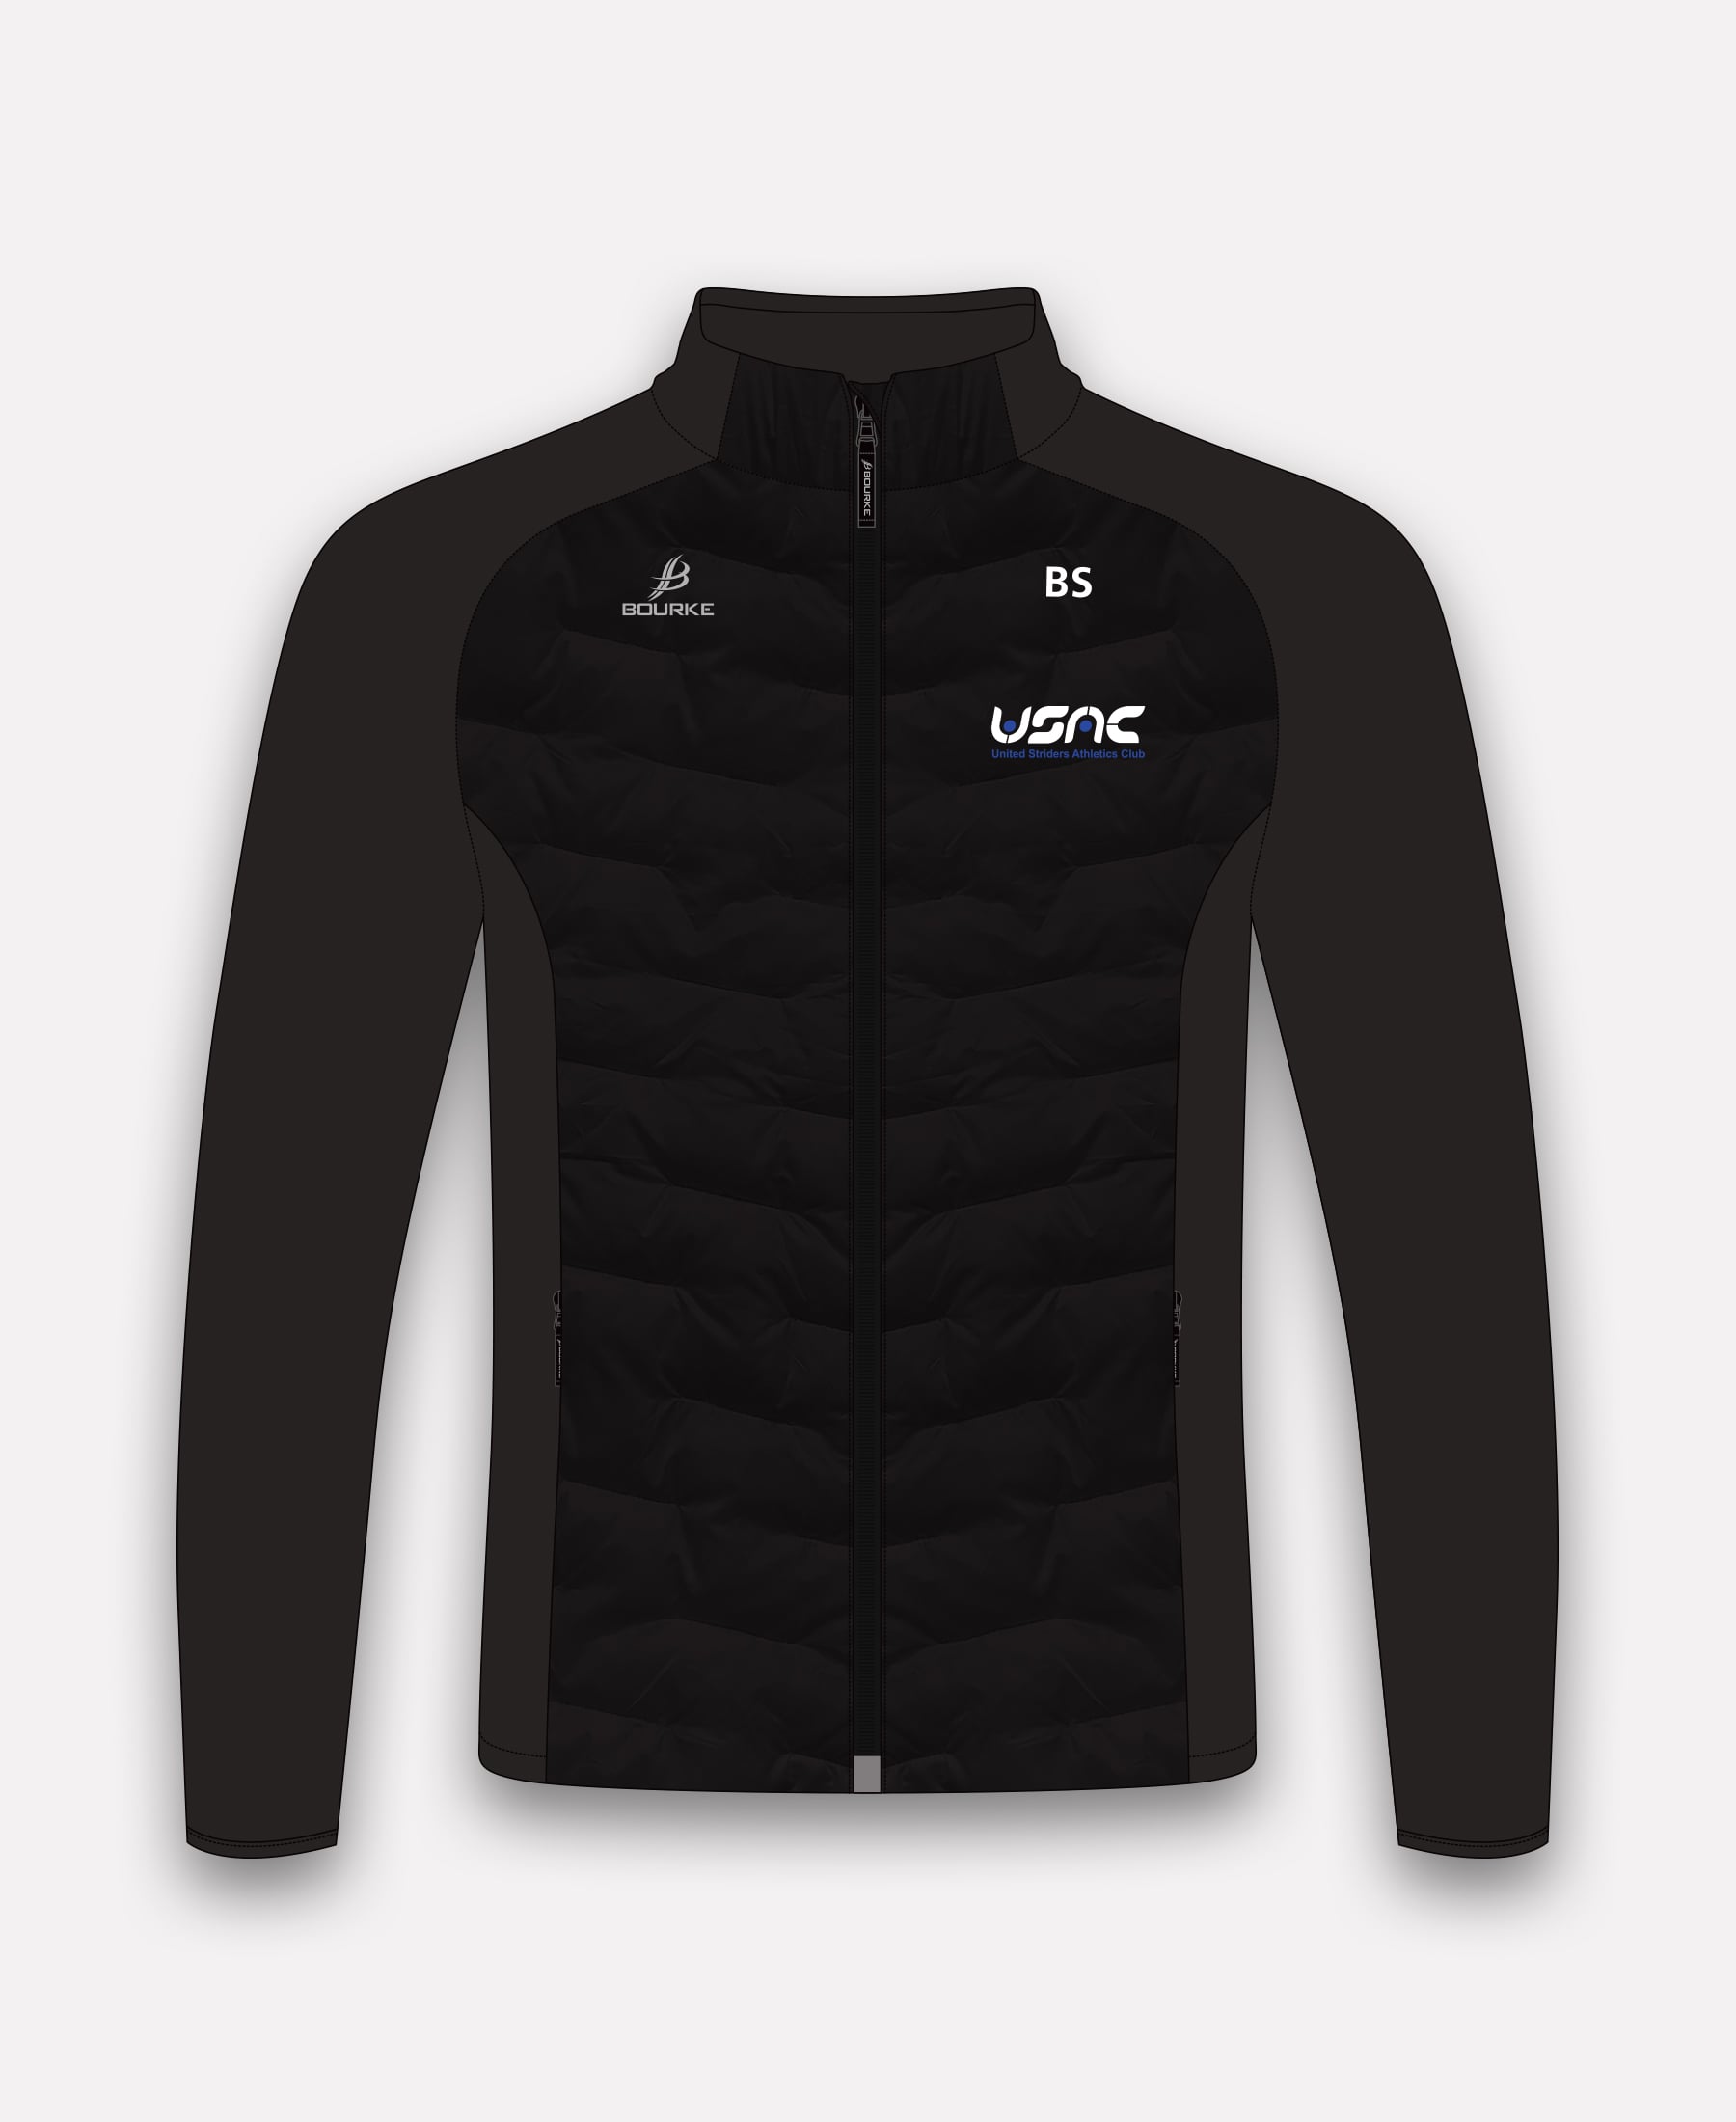 United Striders Croga Hybrid Jacket (Black)